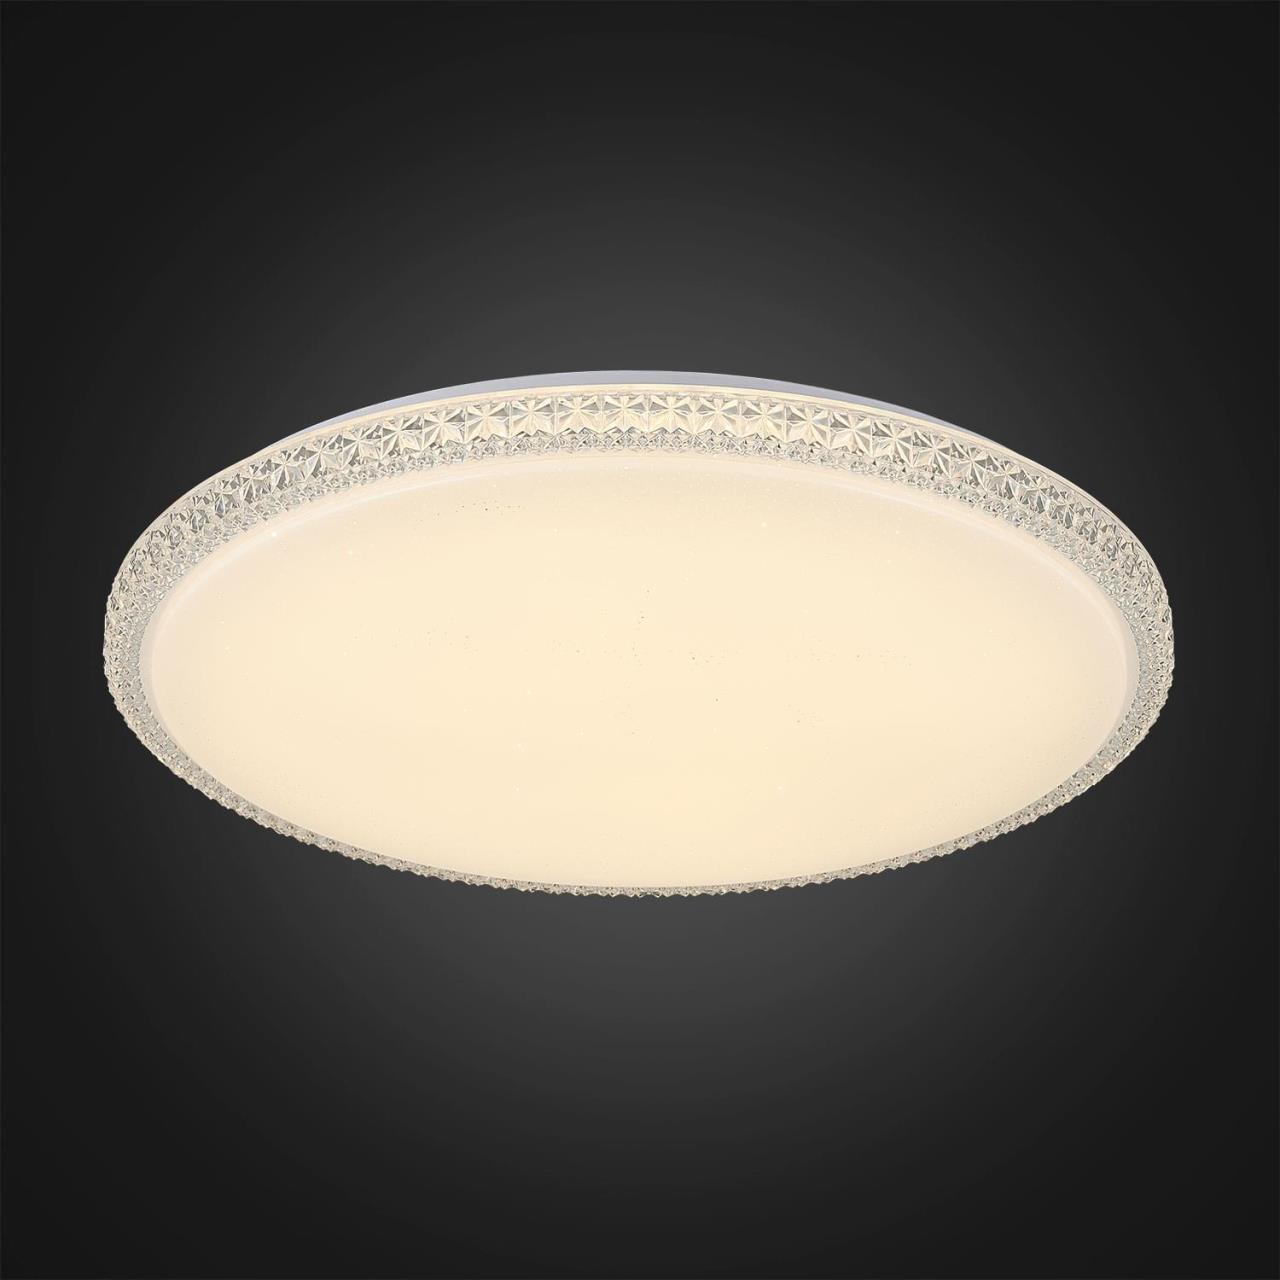 Потолочный светодиодный светильник Citilux Кристалино Слим CL715R720, LED 72W 3000K 5400lm, белый, металл, пластик - фото 5